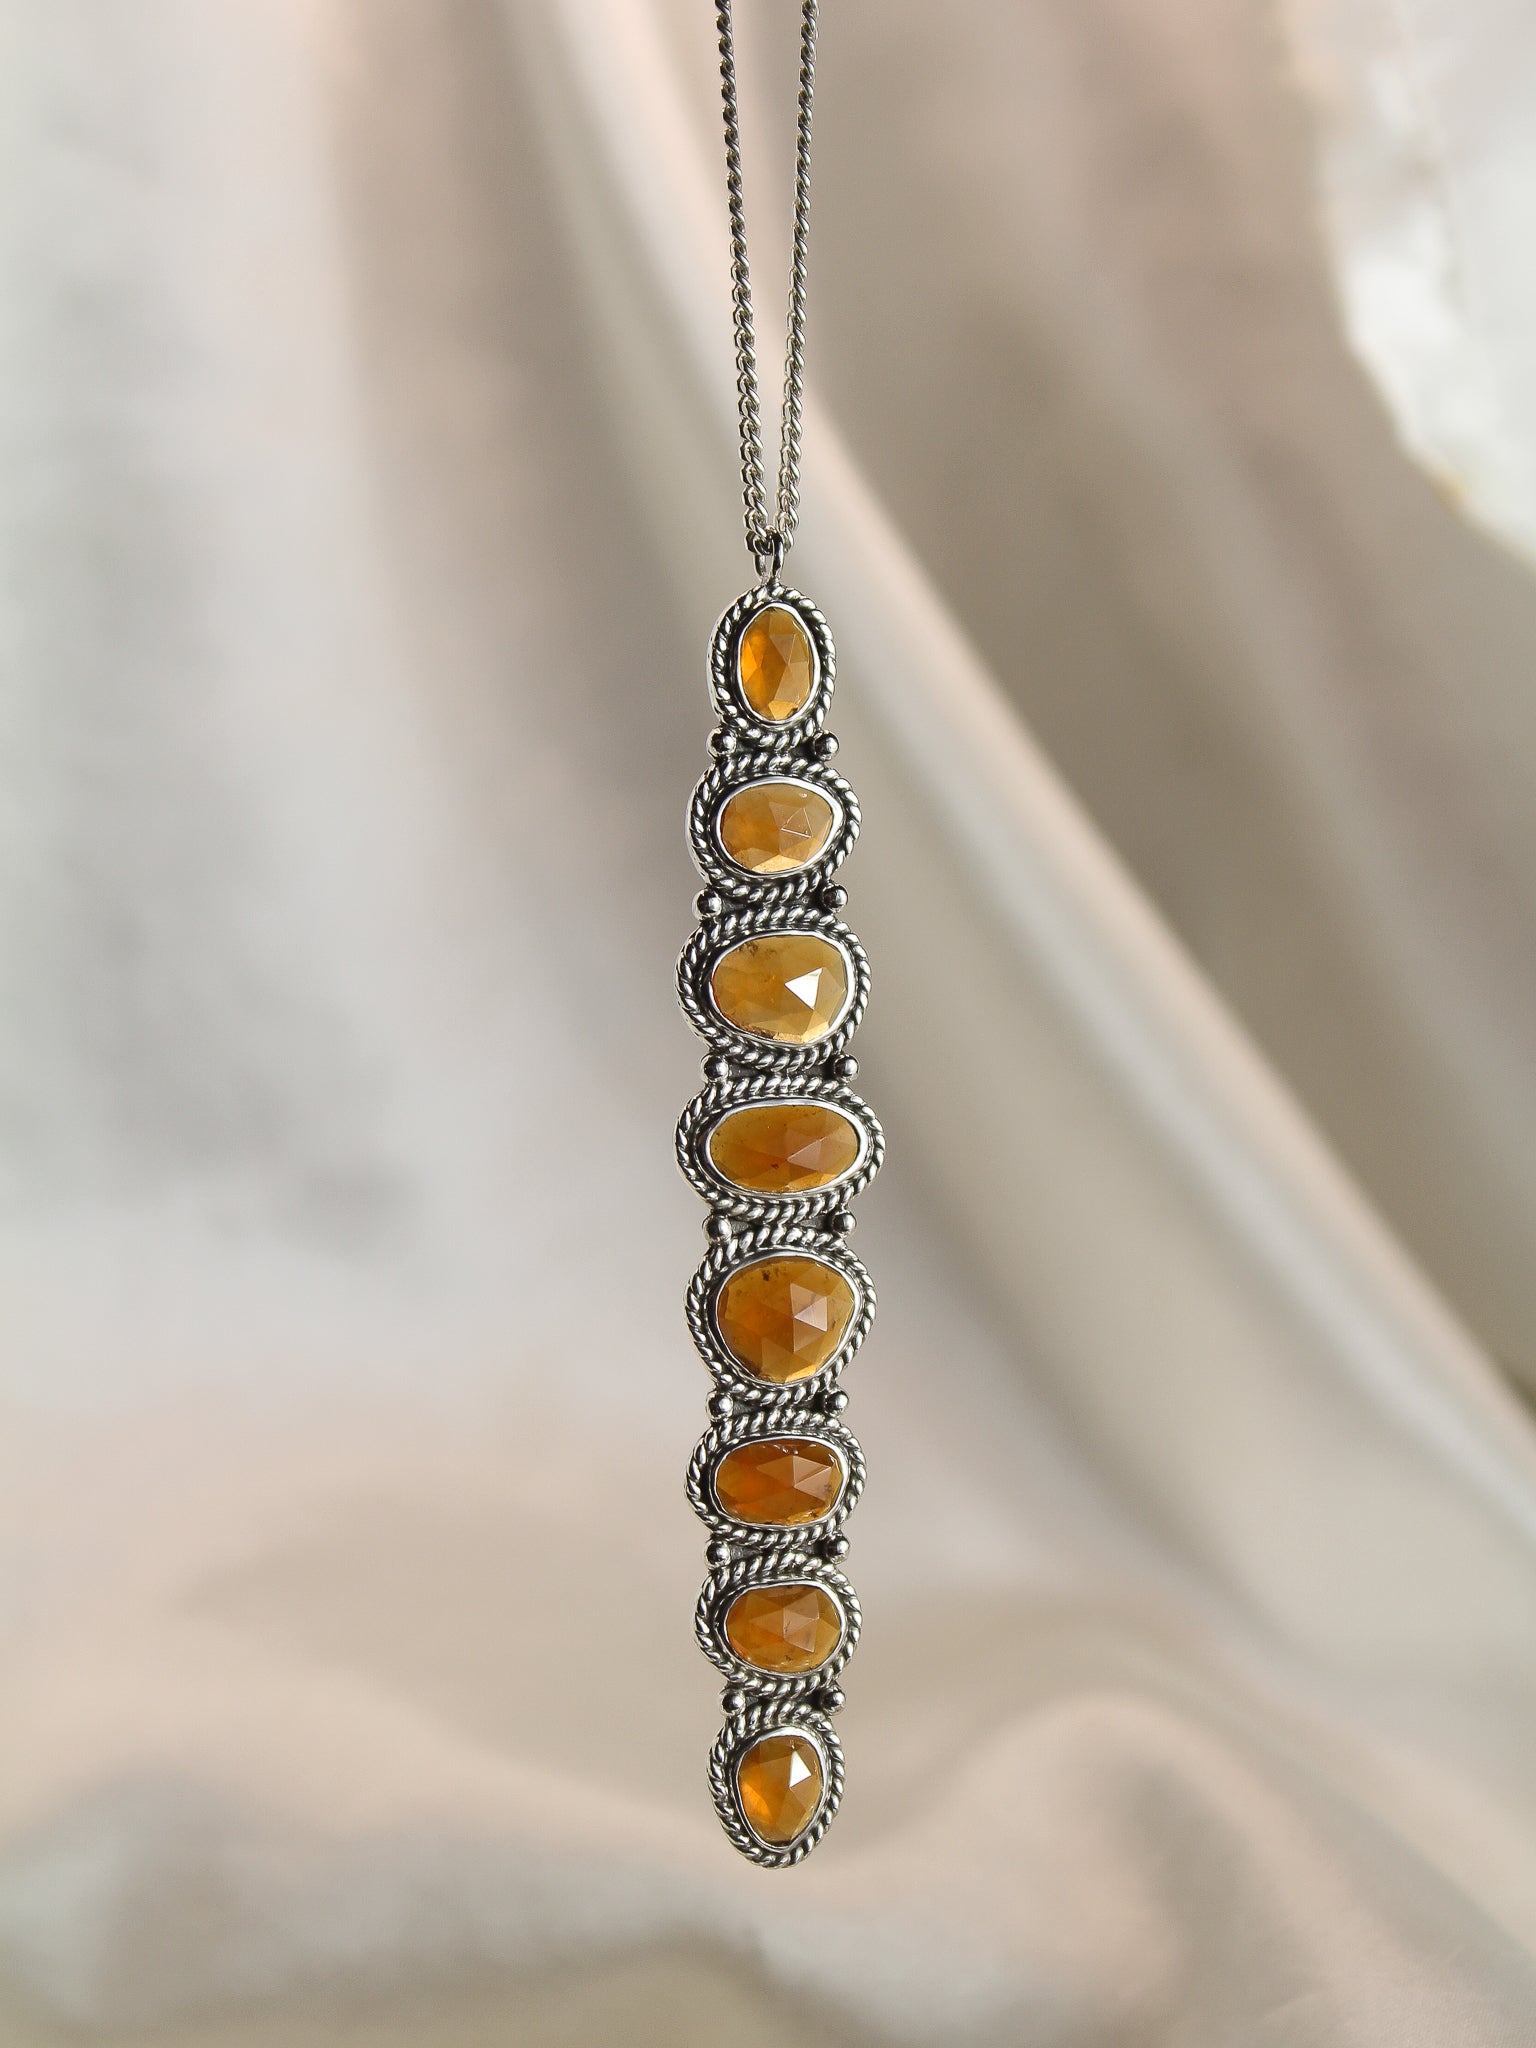 Spessartine Garnet Necklace